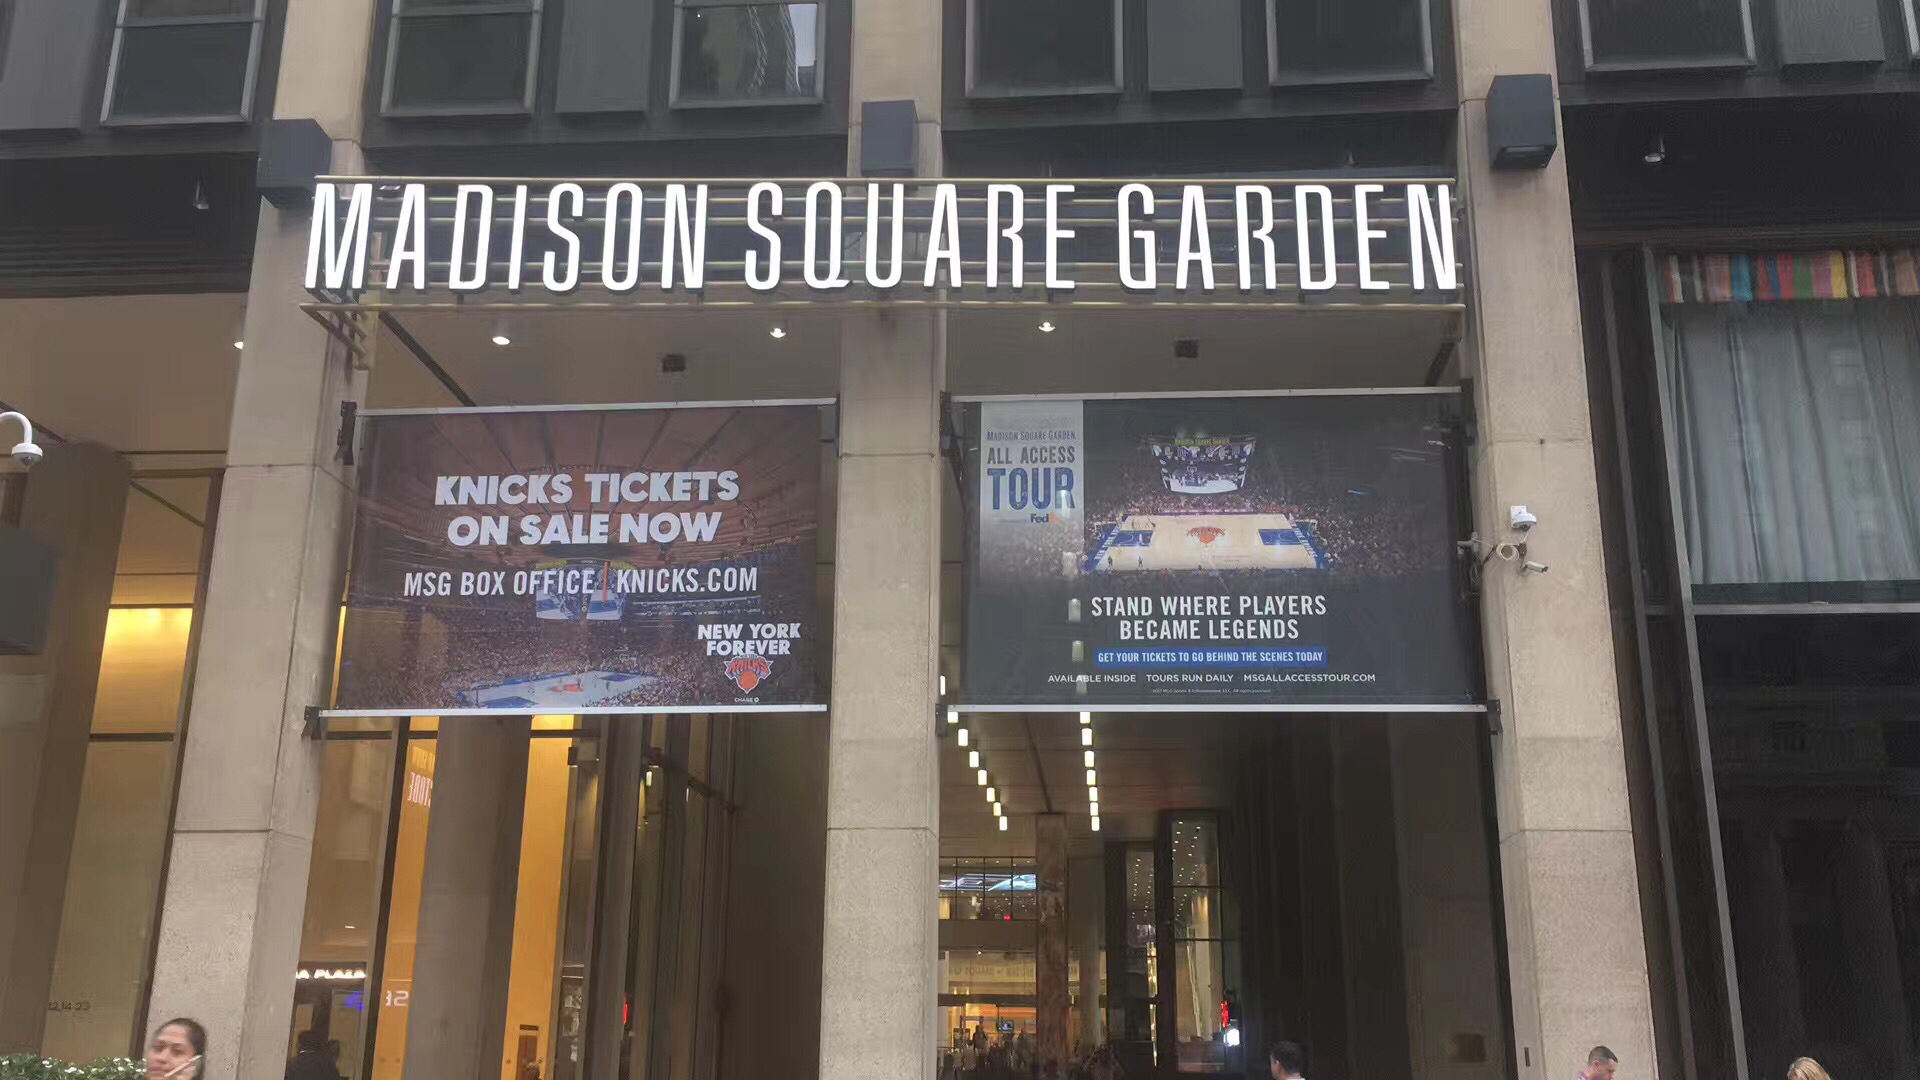 Madison Square Garden 4 Park Row, New York, NY 10038 - YP.com